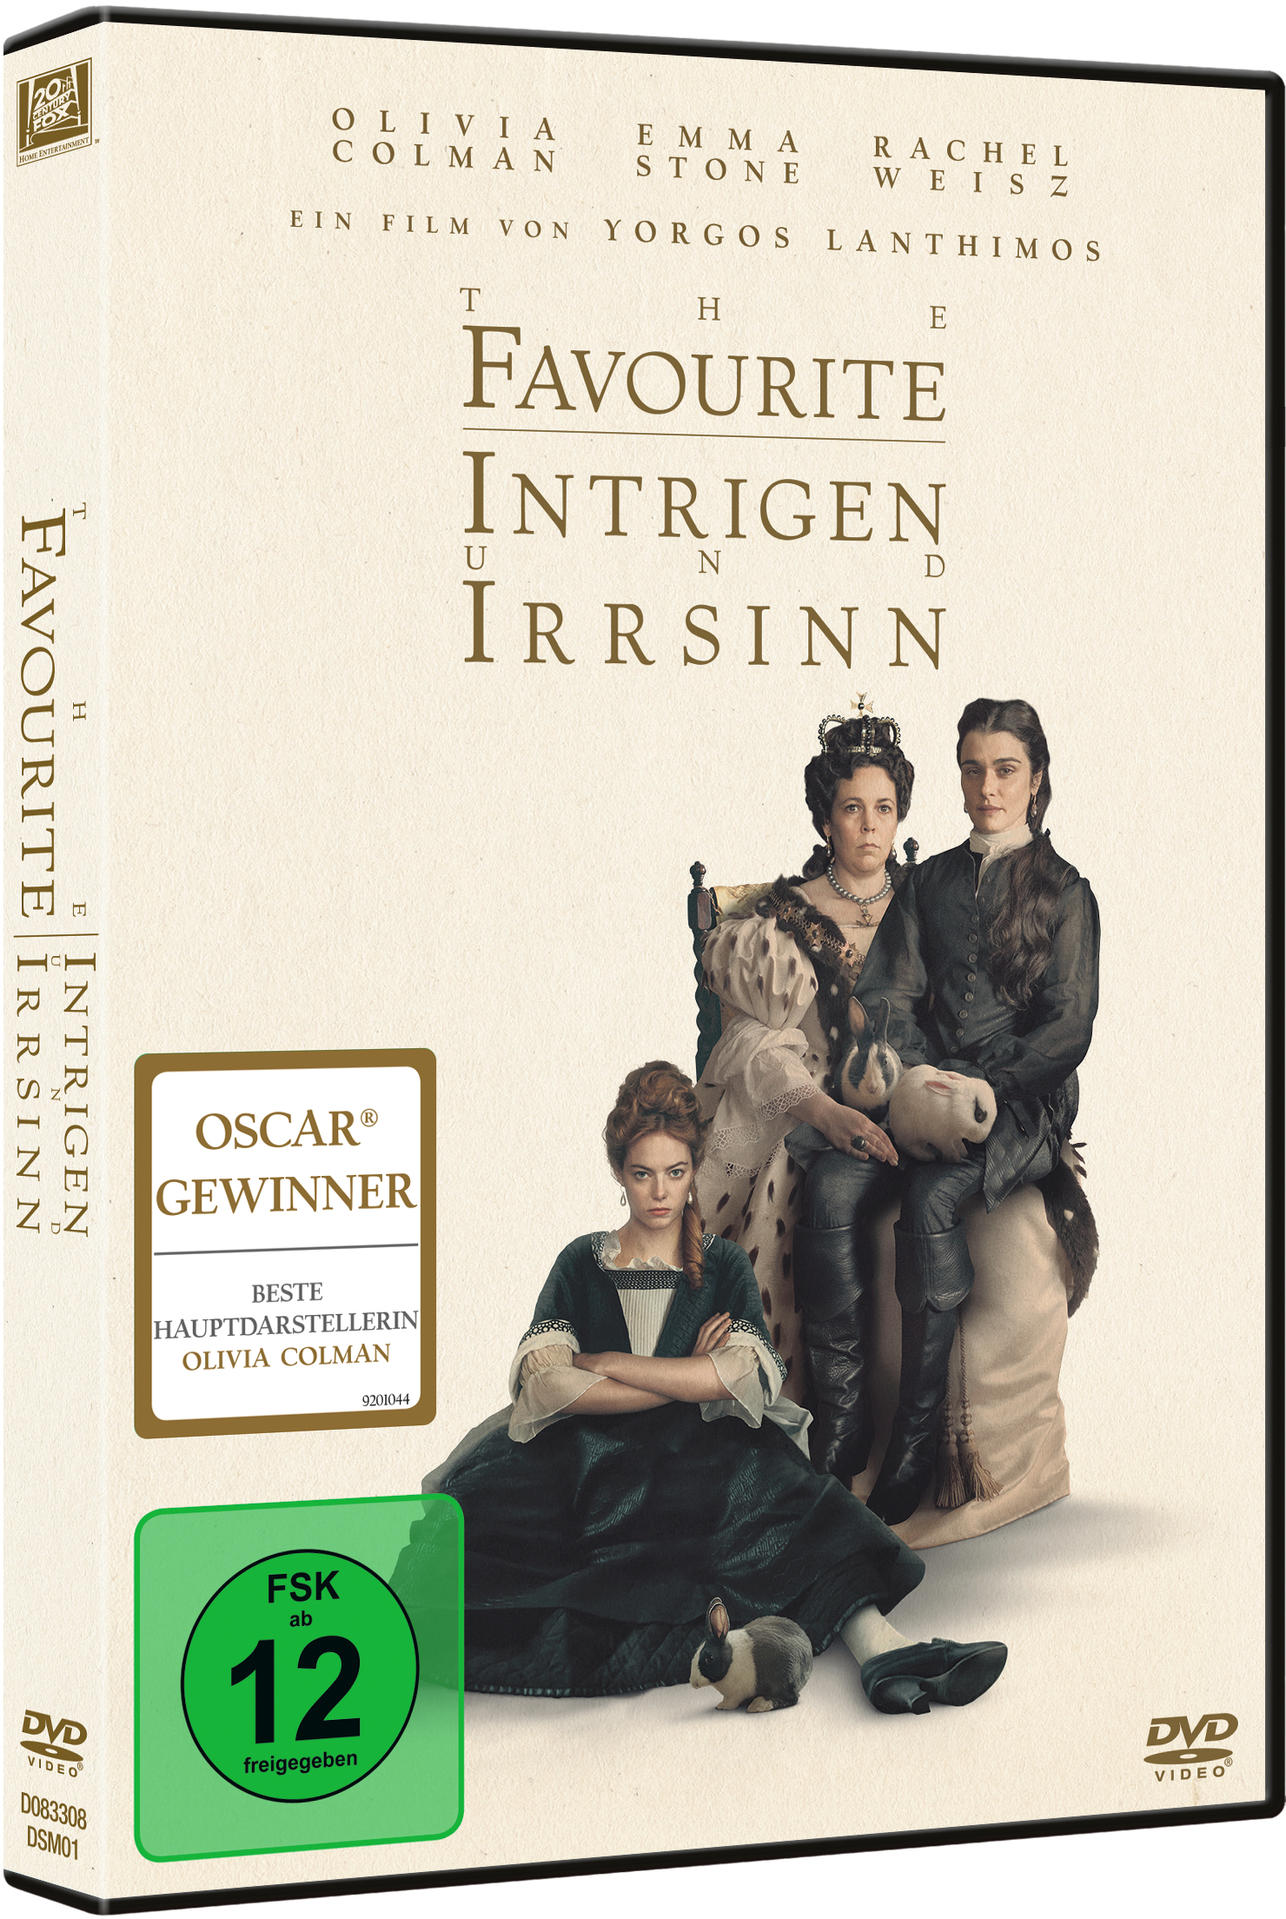 und DVD The Irrsinn Intrigen - Favourite